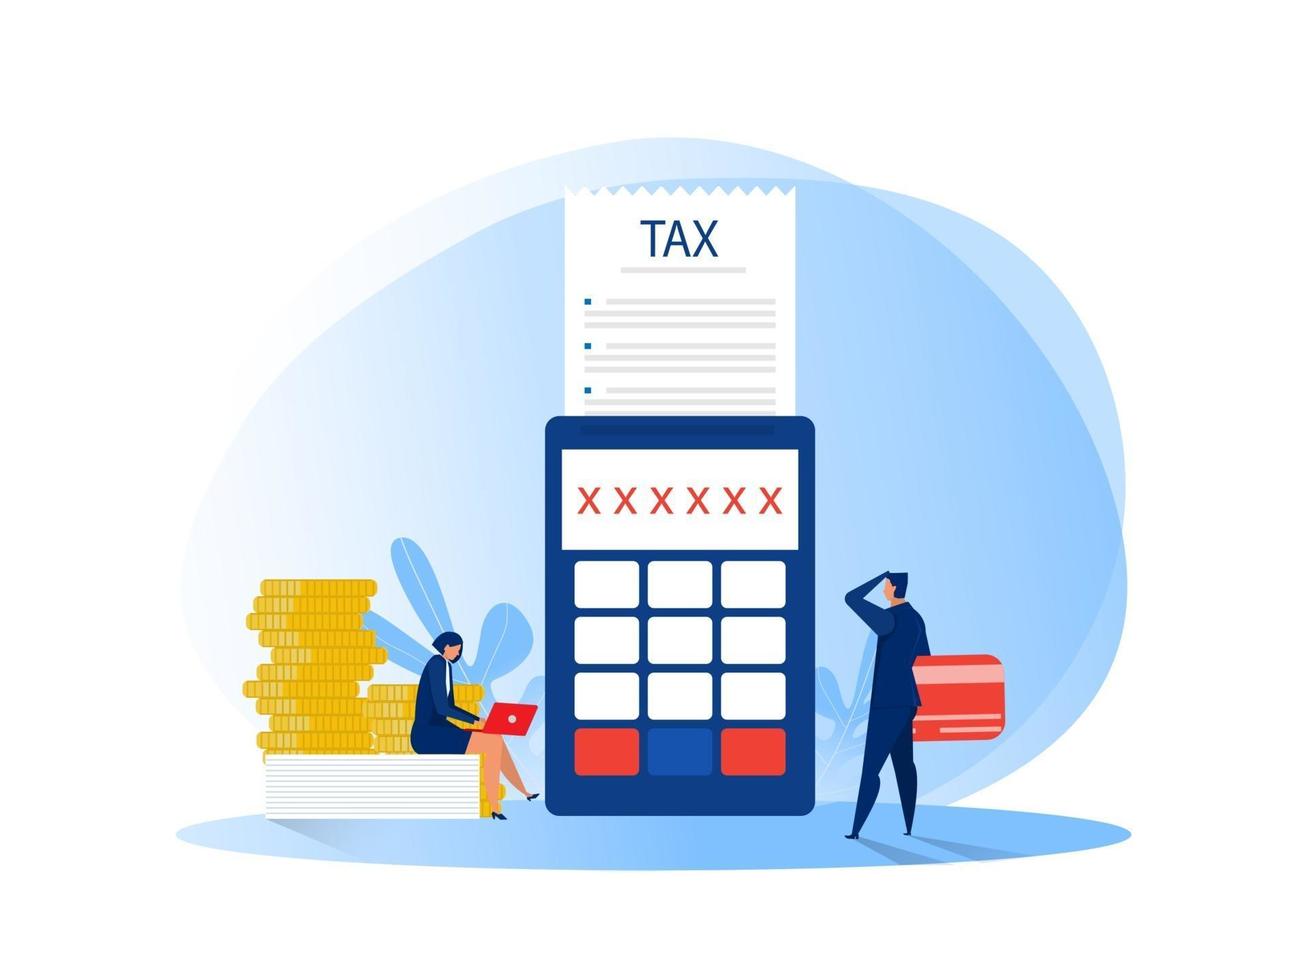 analisi finanziaria fiscale uomini d'affari calcolo documento per illustrazione vettoriale piatto tasse